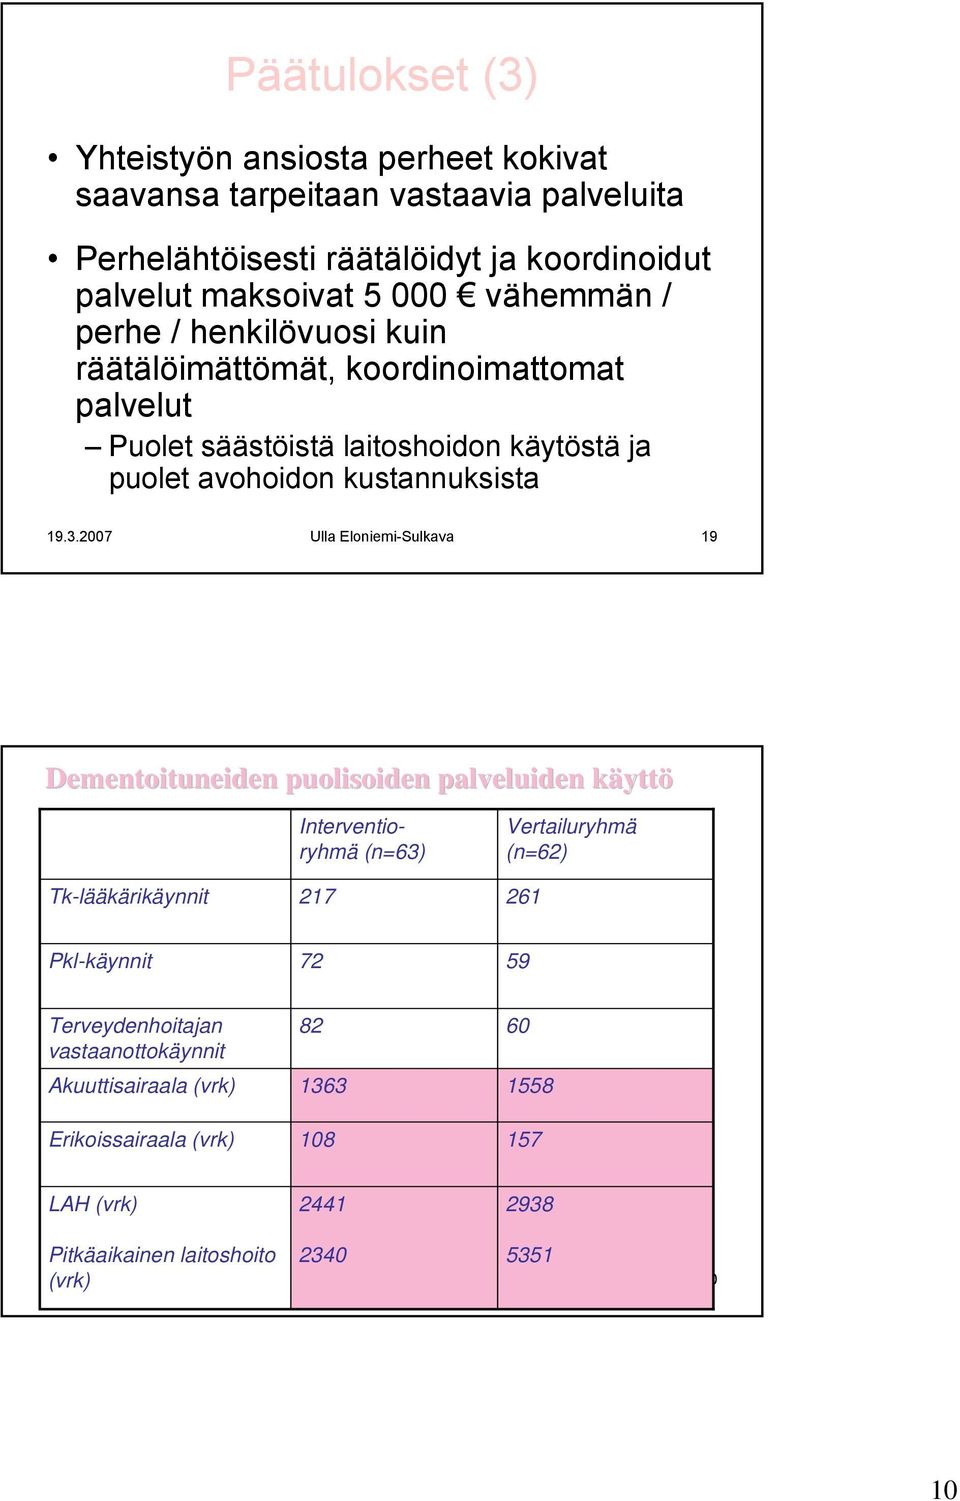 2007 Ulla Eloniemi-Sulkava 19 Dementoituneiden puolisoiden palveluiden käyttk yttö Tk-lääkärikäynnit Interventioryhmä (n=63) 217 Vertailuryhmä (n=62) 261 Pkl-käynnit 72 59